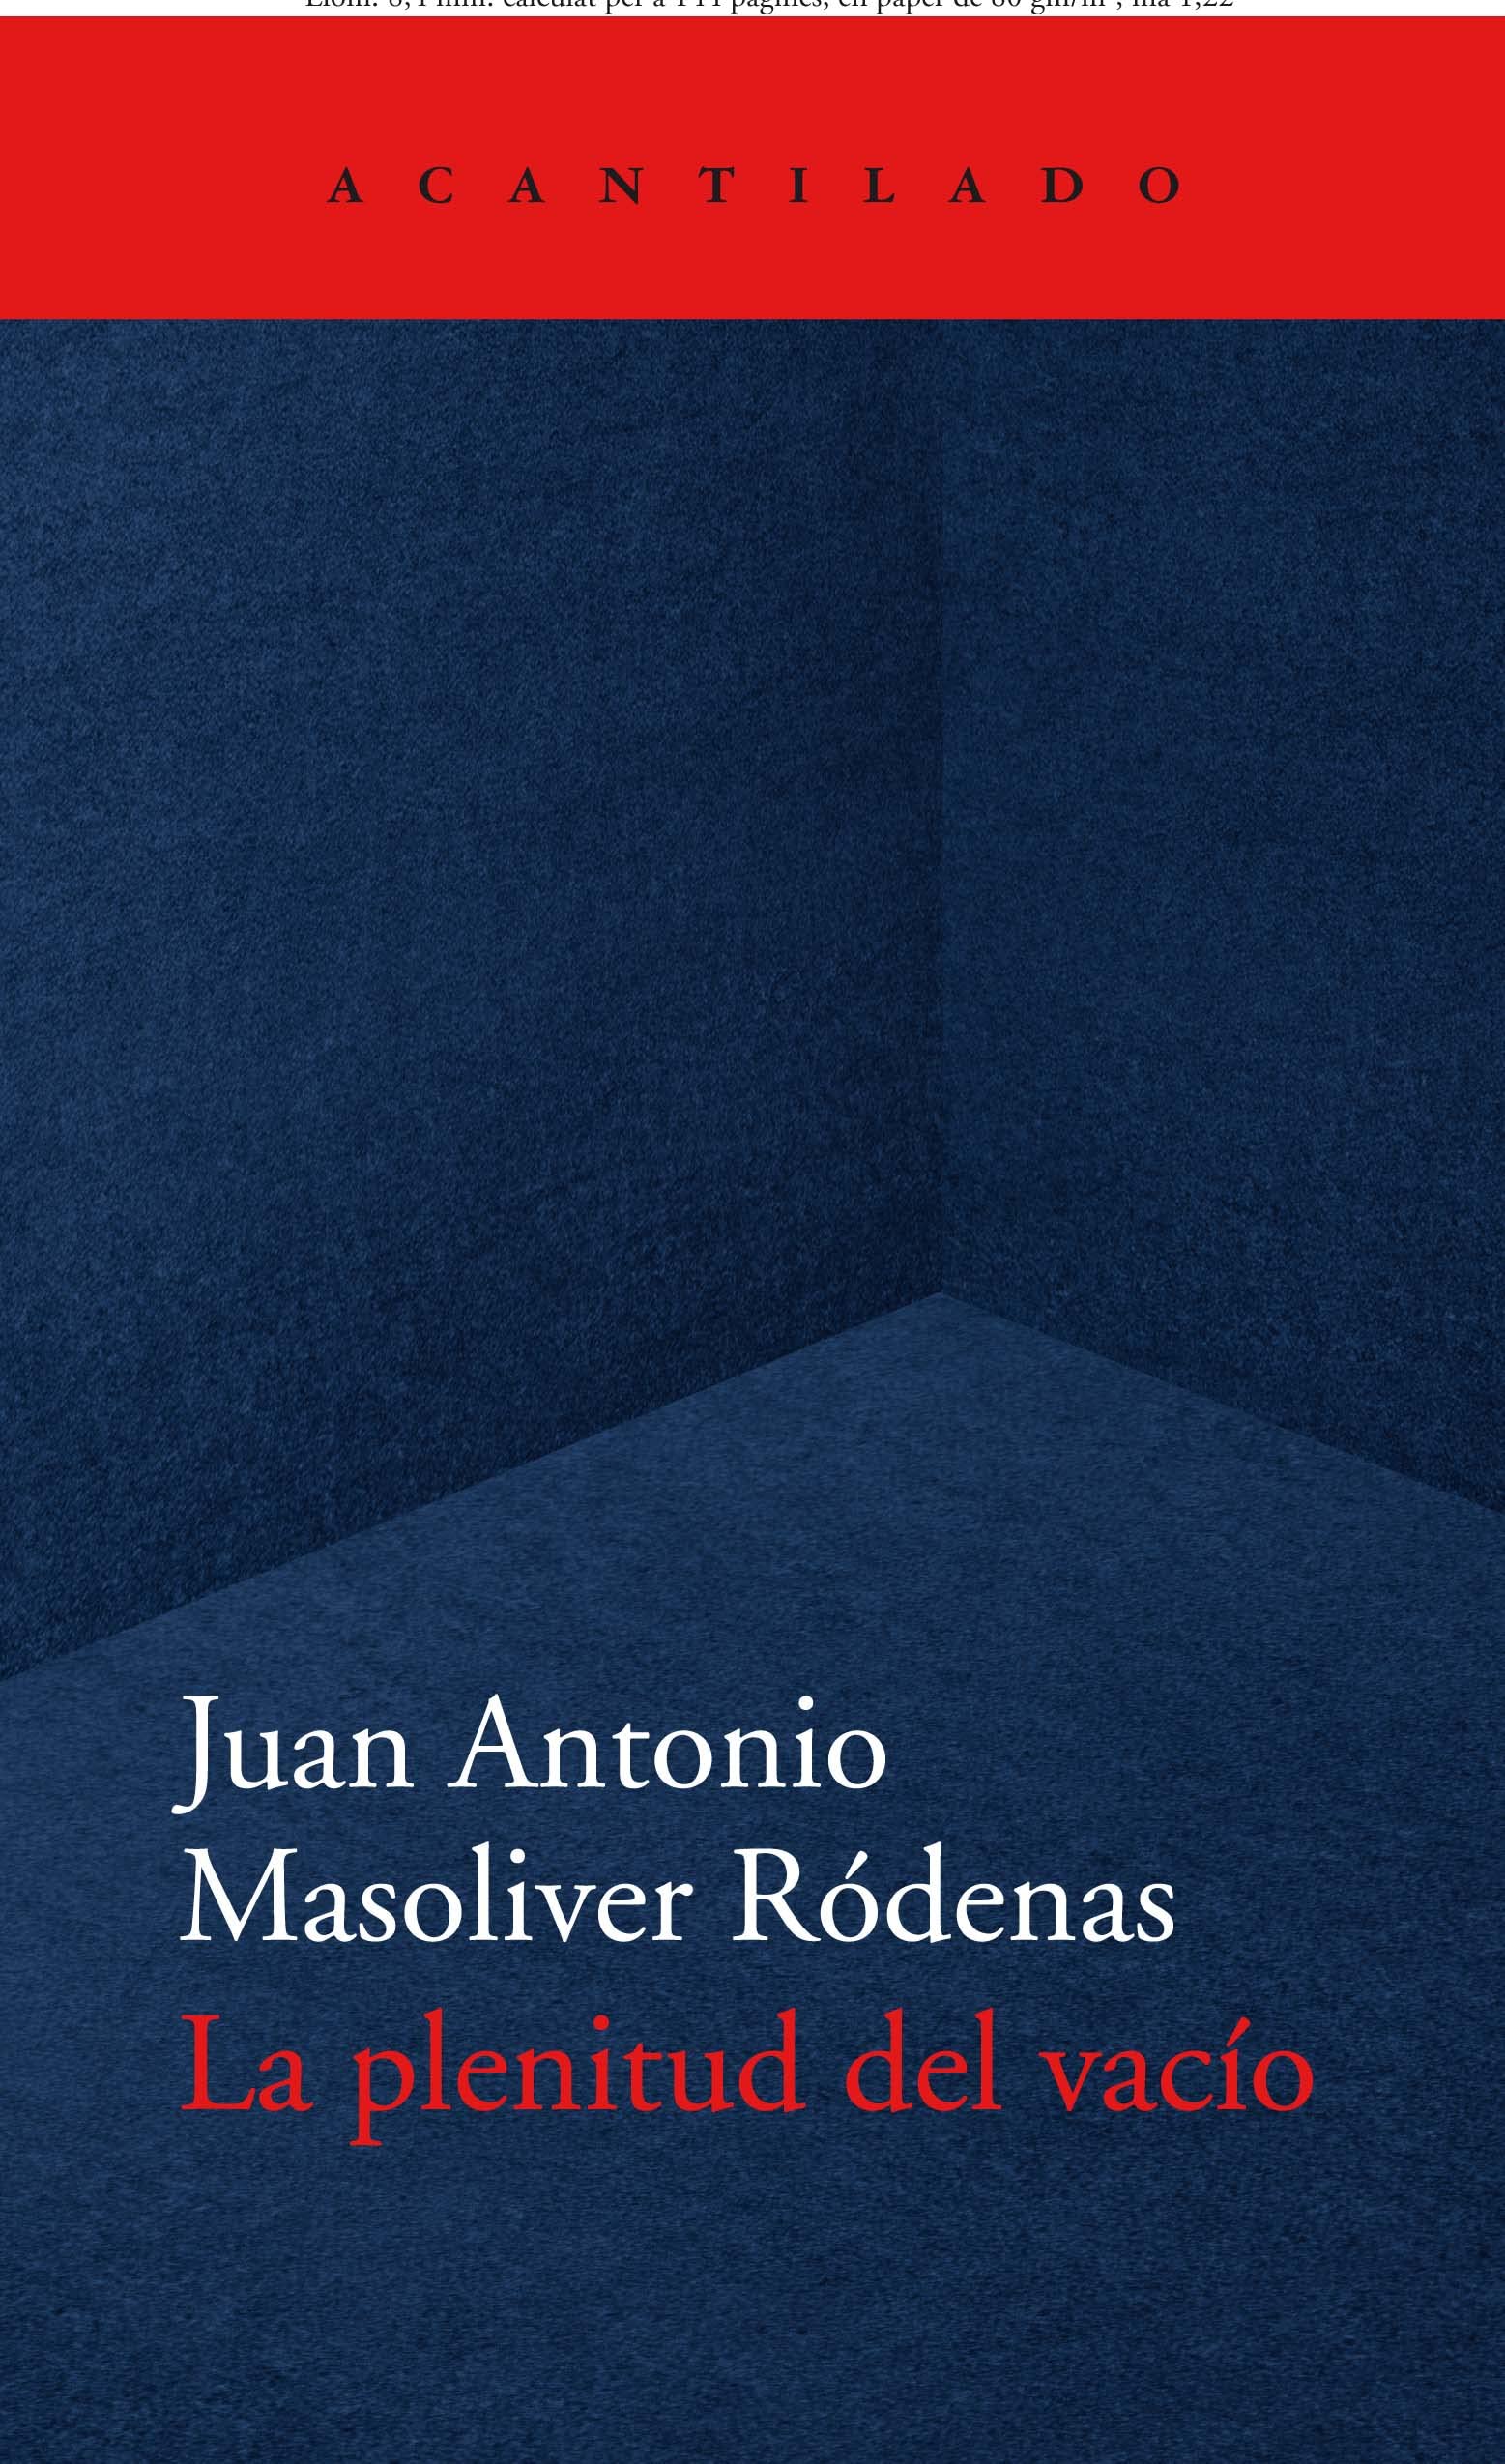 8 poemas de Juan Antonio Masoliver Ródenas